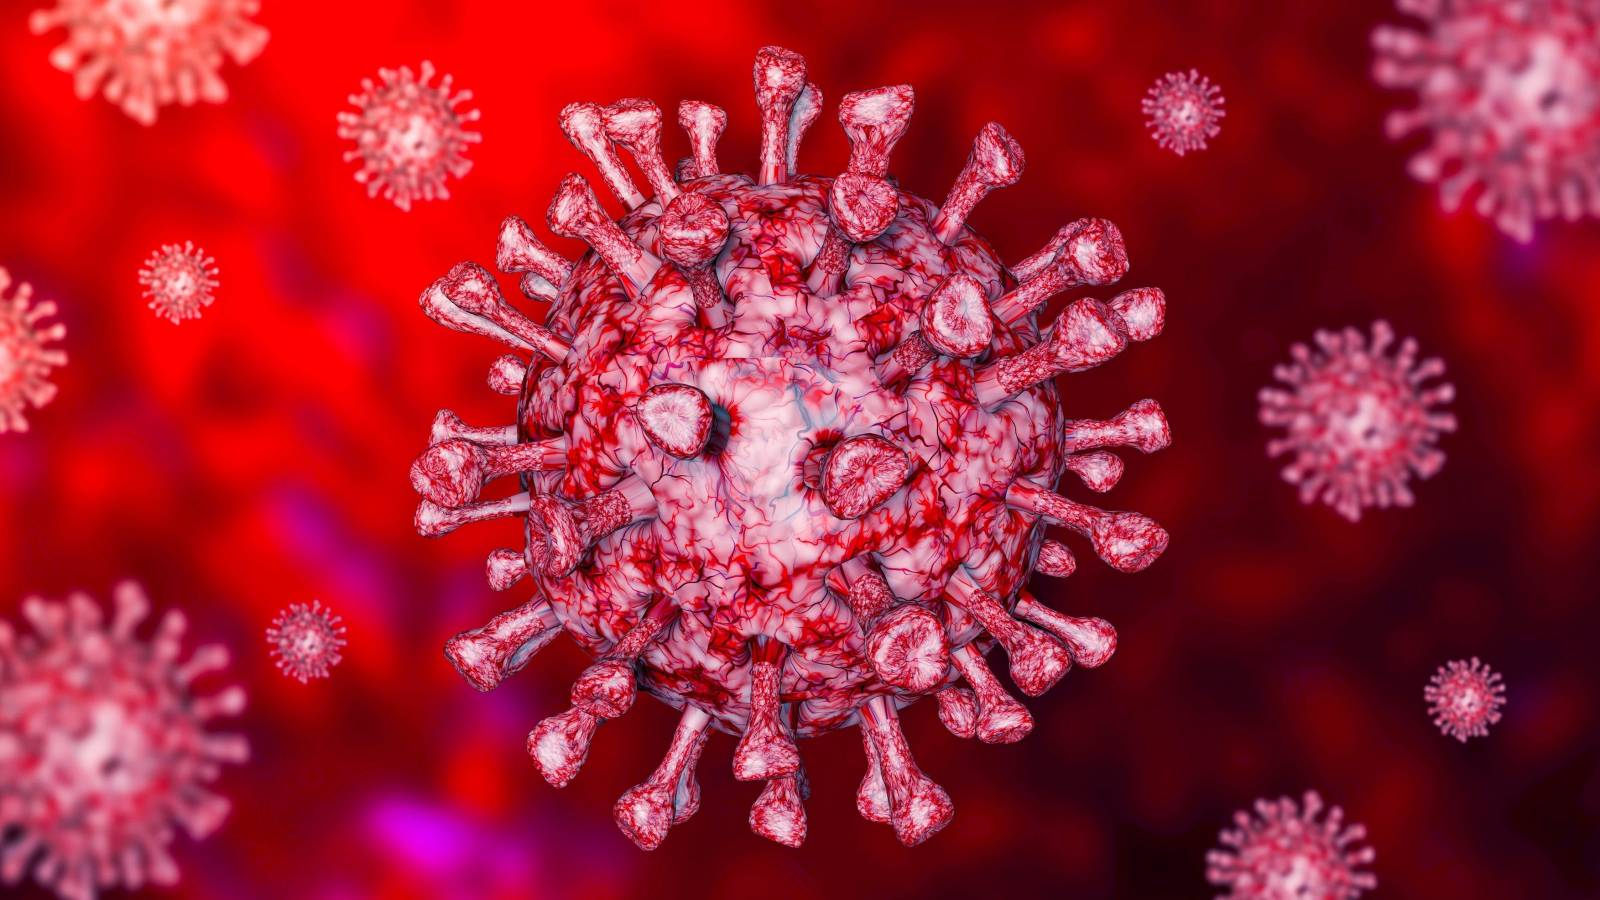 Romanian koronavirus uusia tapauksia, parannuskeinoja virallisesti ilmoitettu 1. maaliskuuta 2021